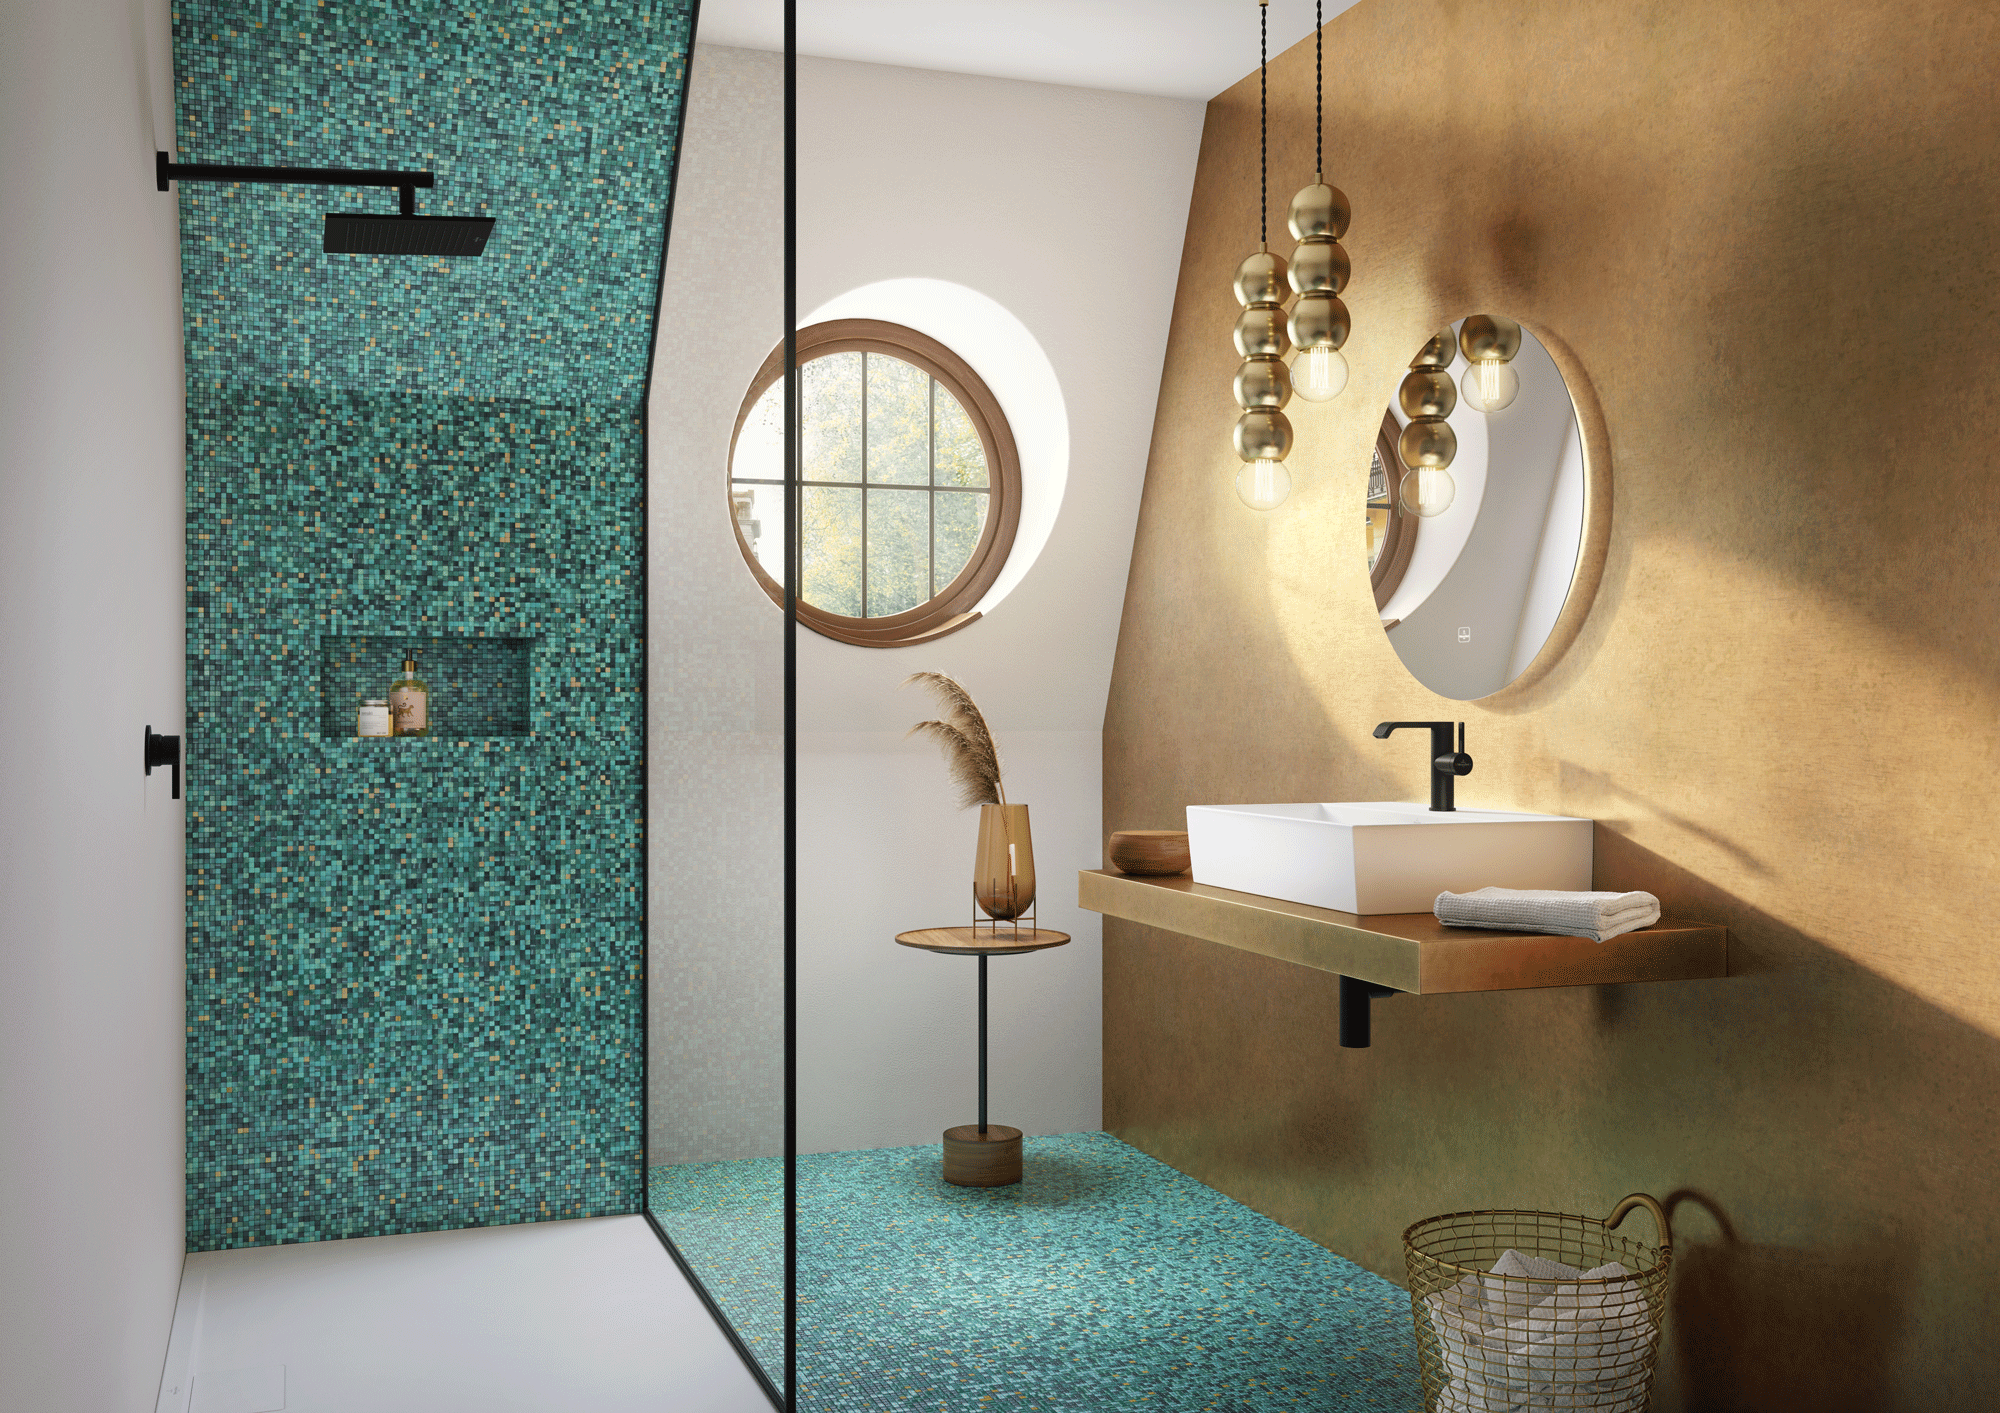 Farbe im Bad: Dusche mit grünen Fliesen und braune Wand